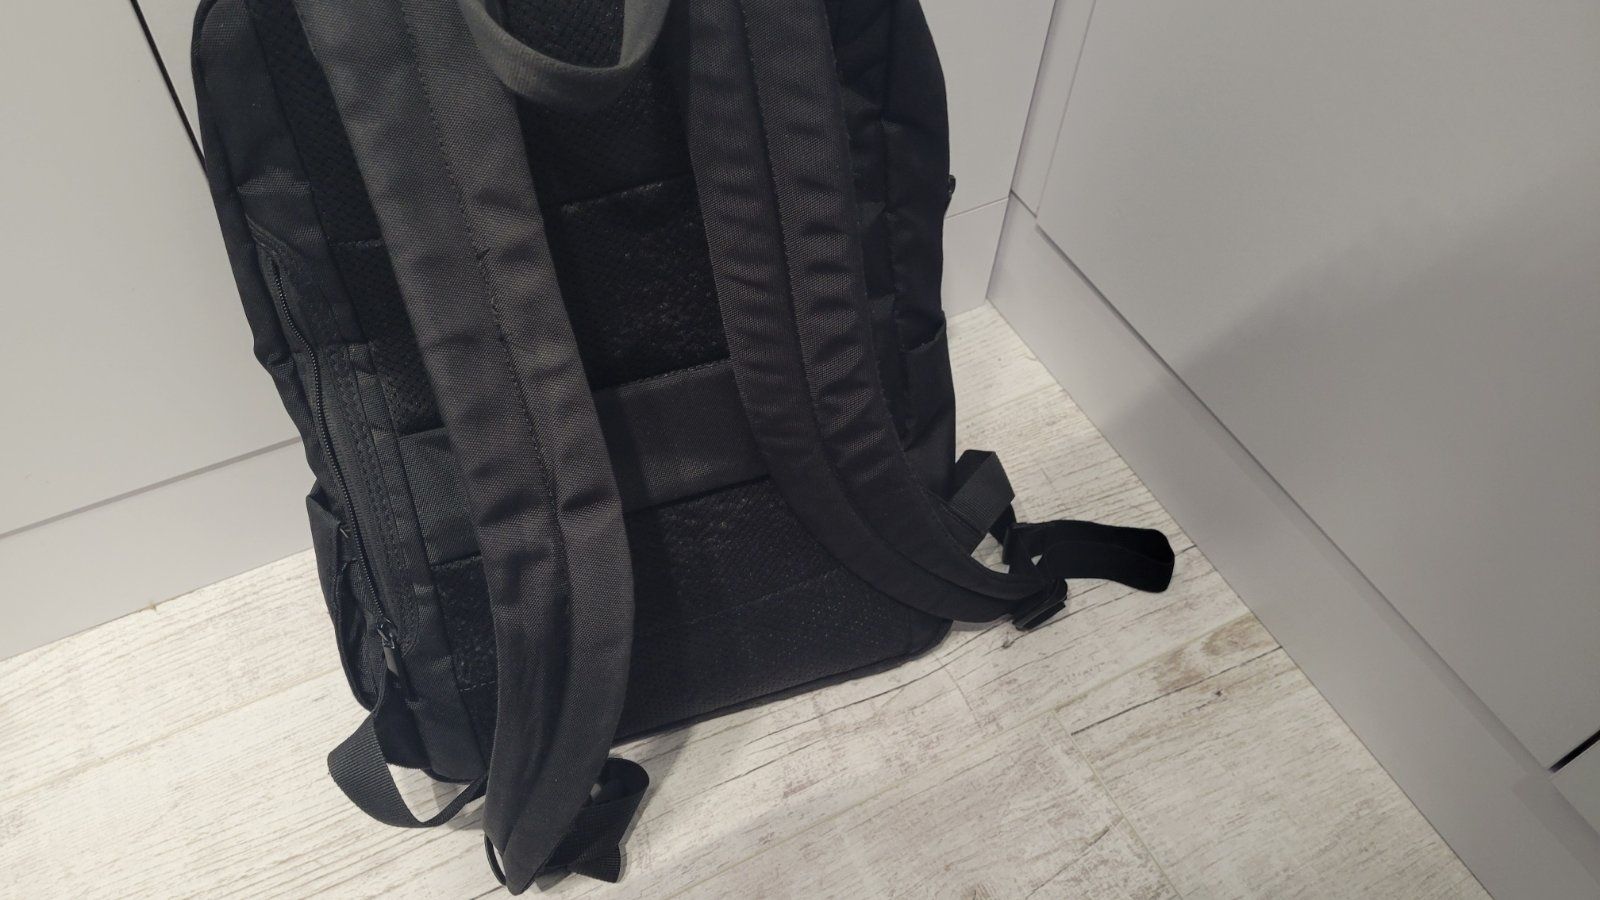 Рюкзак Xiaomi Business Backpack 2, Оригинал